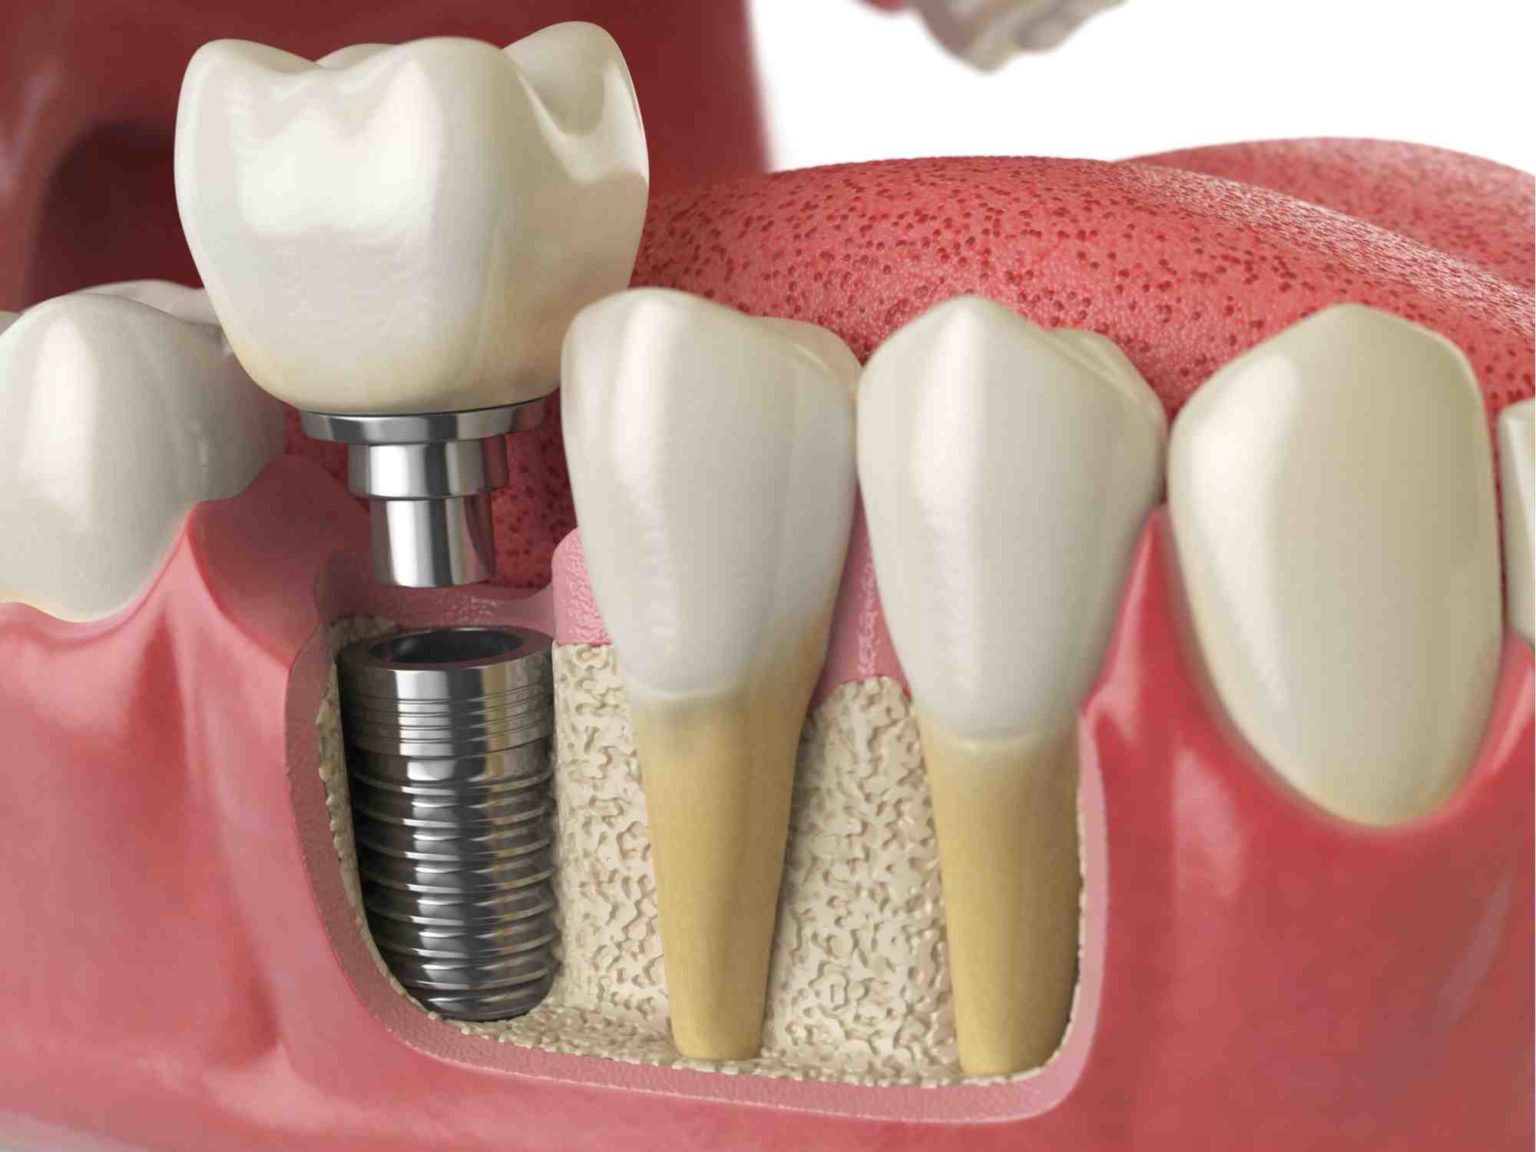 Does medicare cover dental implants - Dental News Network